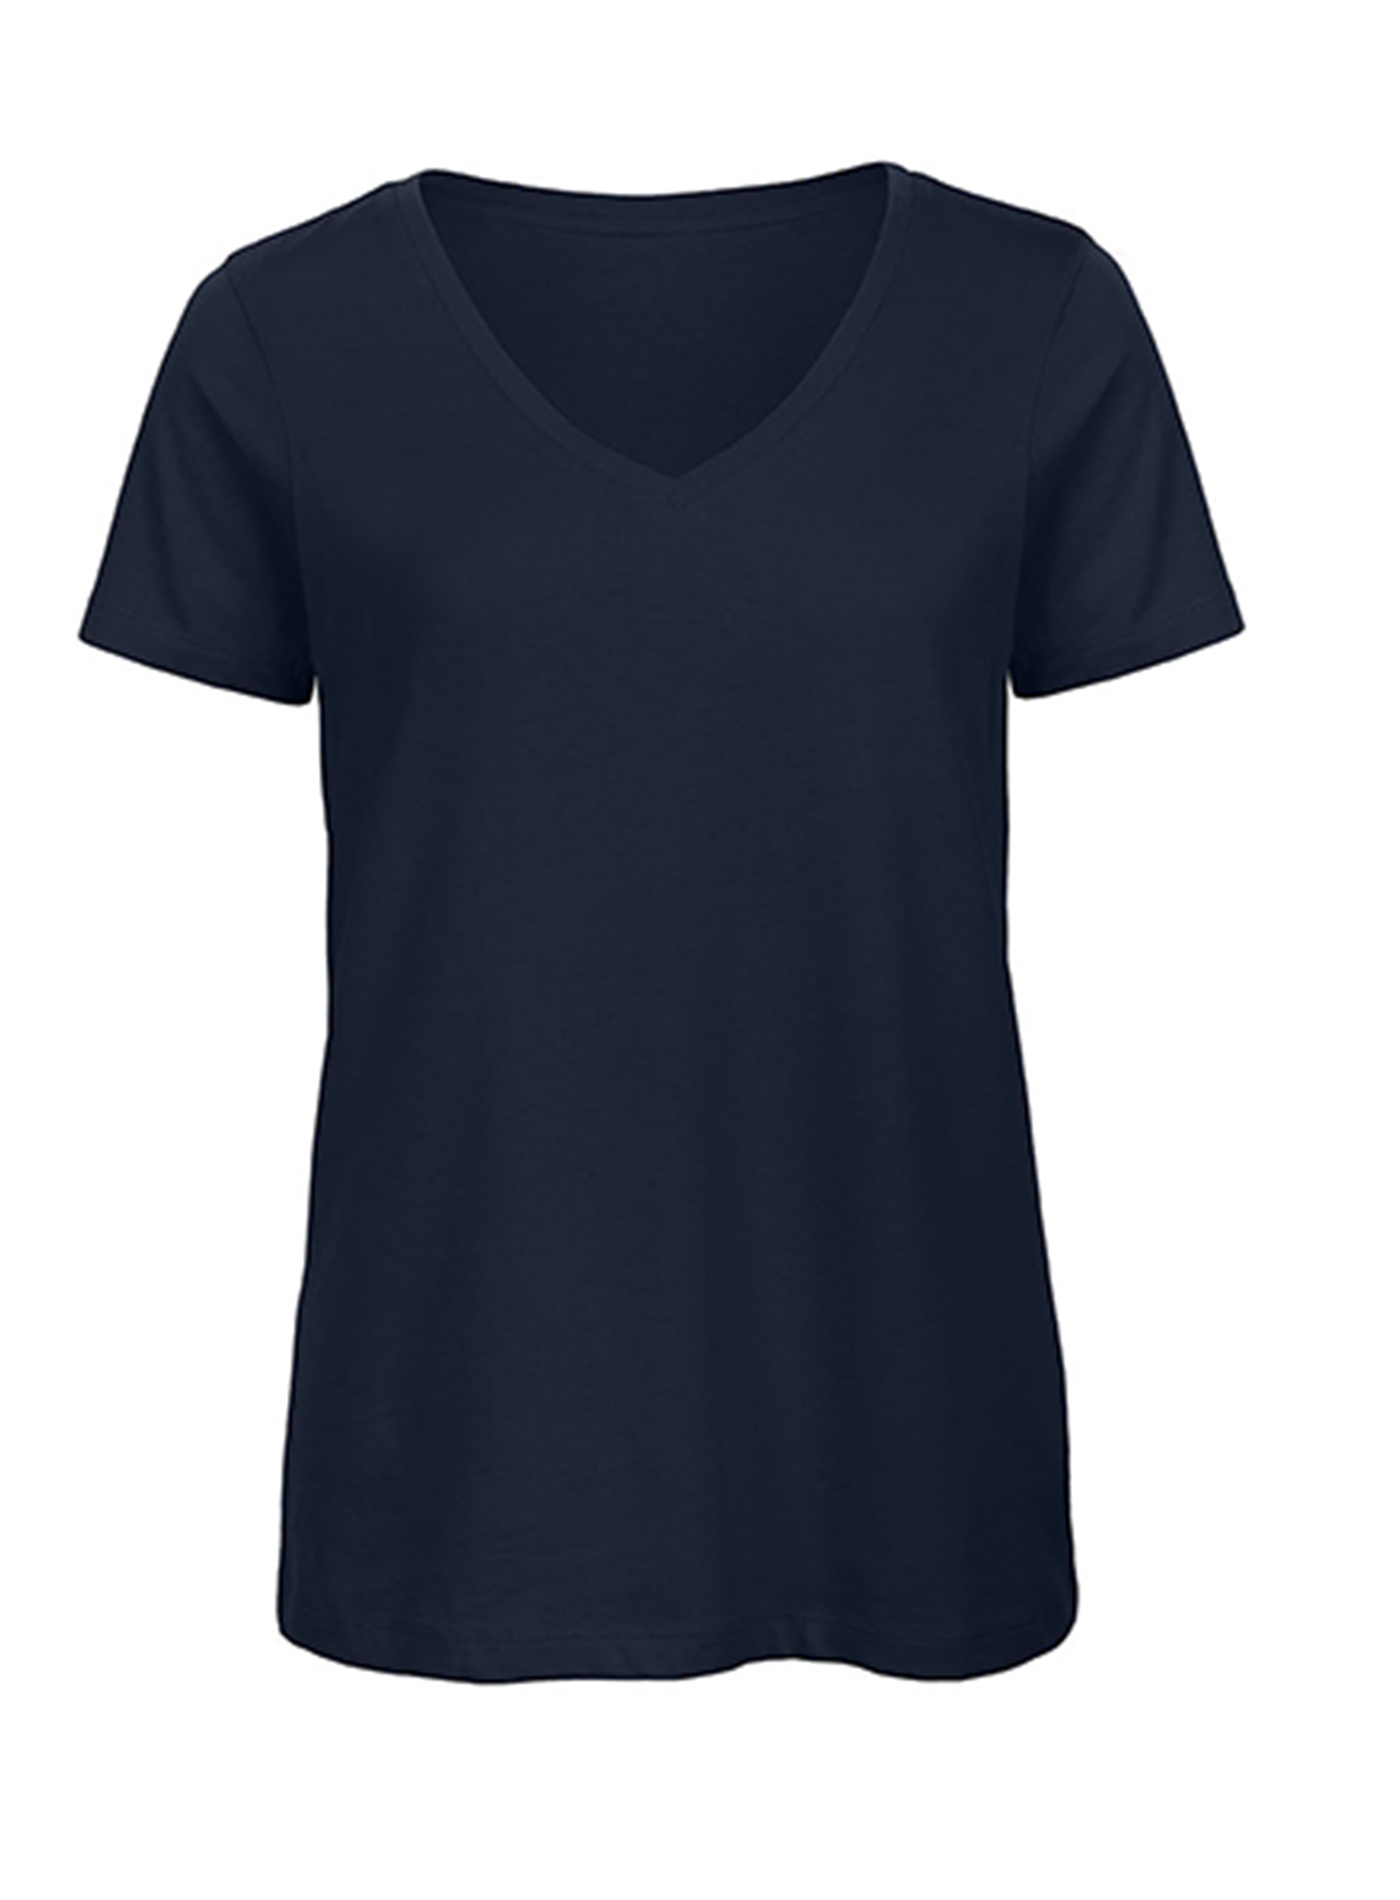 Dámské tričko s výstřihem do V B&C Collection Inspire - Námořnická modrá M